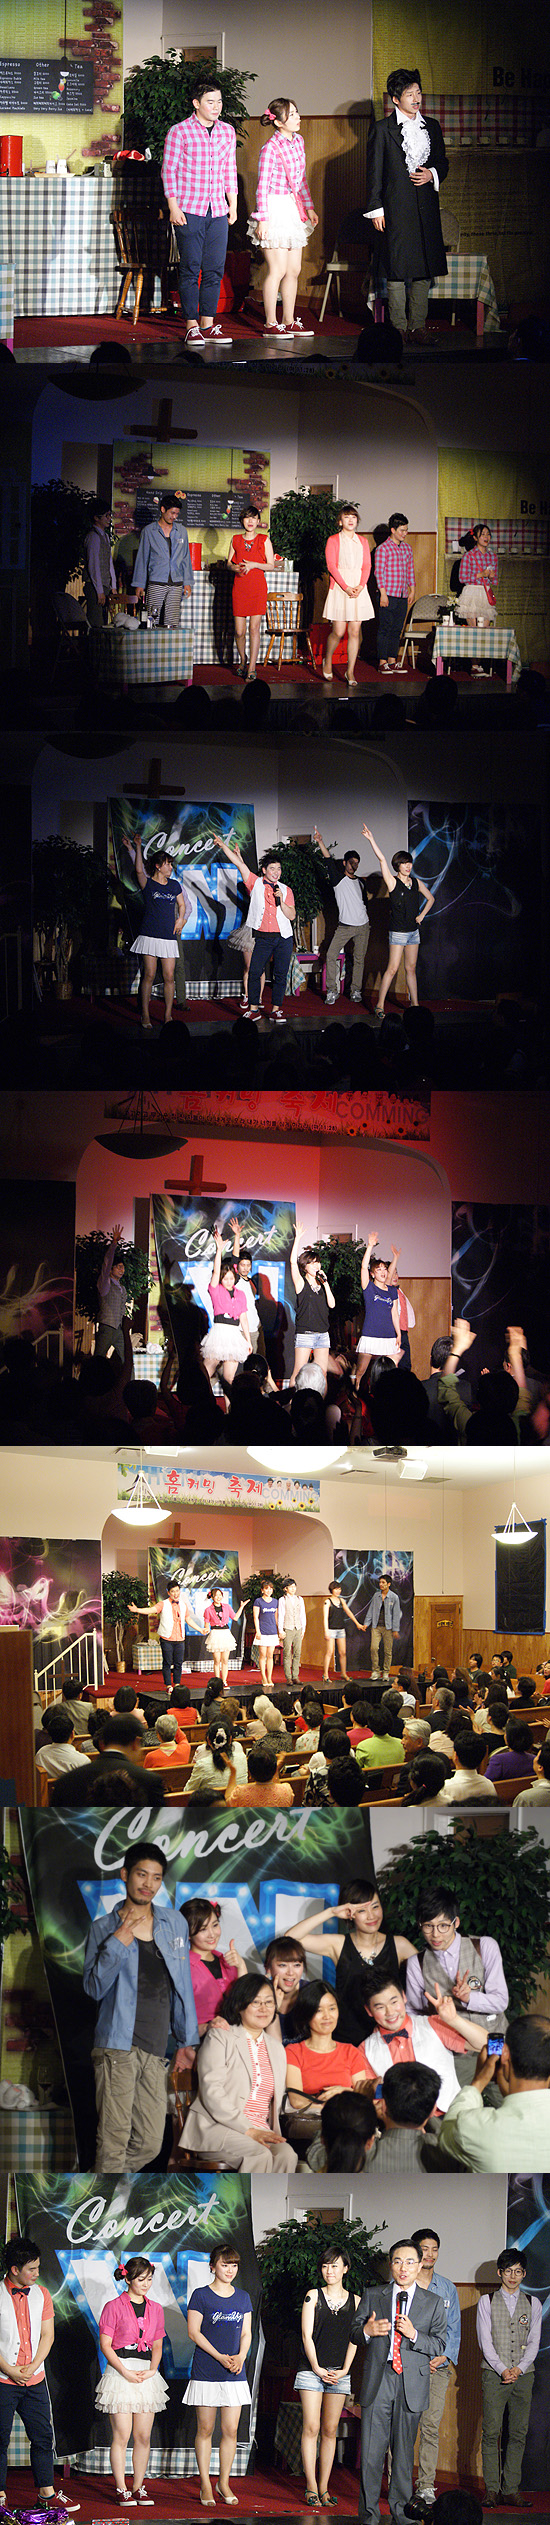 2012년 뉴욕우리교회 홈커밍 축제에서 뮤지컬 공연 모습